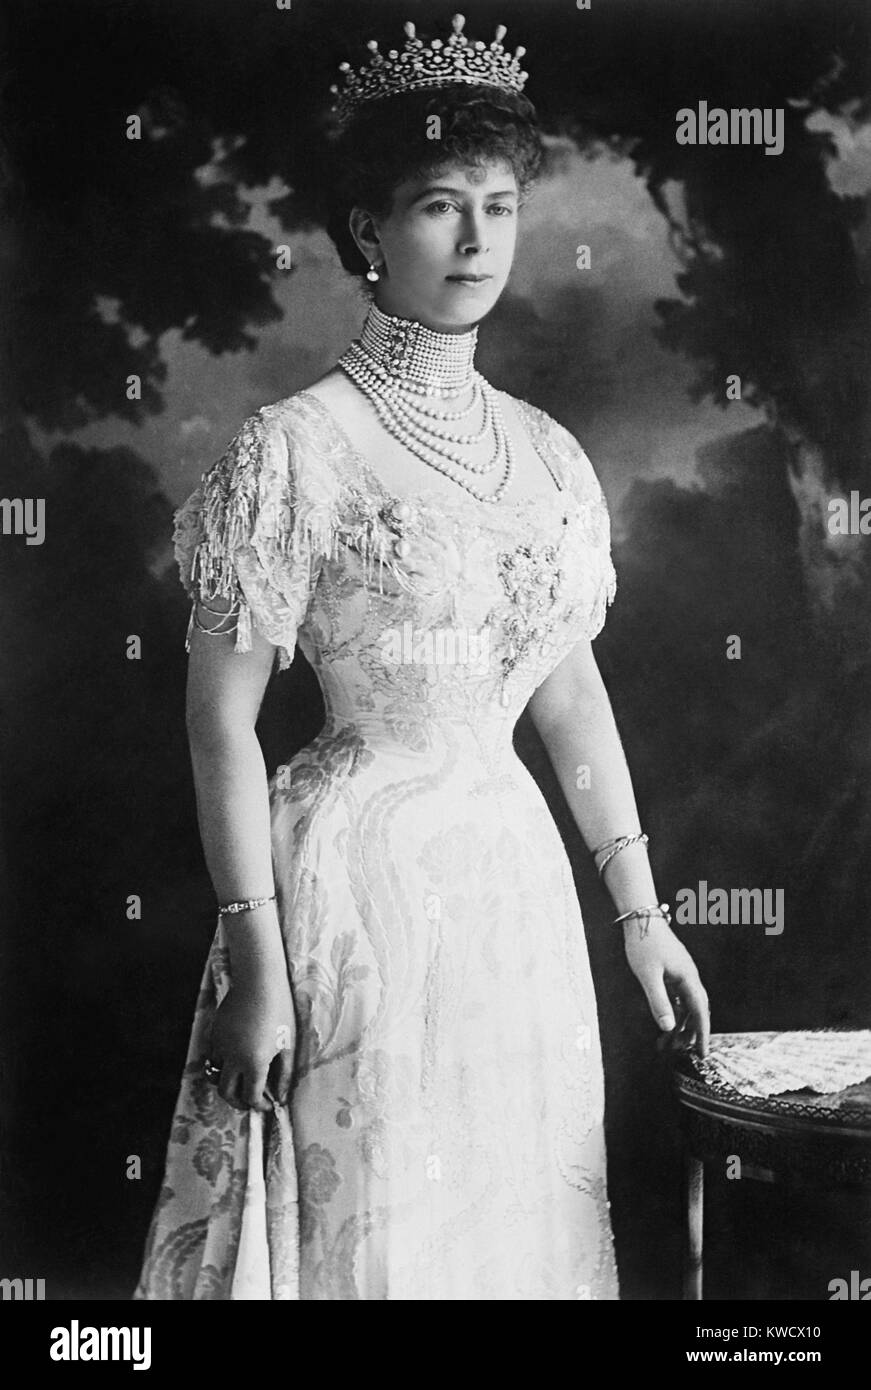 Queen Mary von Teck, Gemahlin des britischen König Georg VI. im Jahr 1914, im Alter von 37. Sie trägt Ähnlichkeit mit ihrer Enkelin, Königin Elizabeth II (BSLOC 2017 1 83) Stockfoto